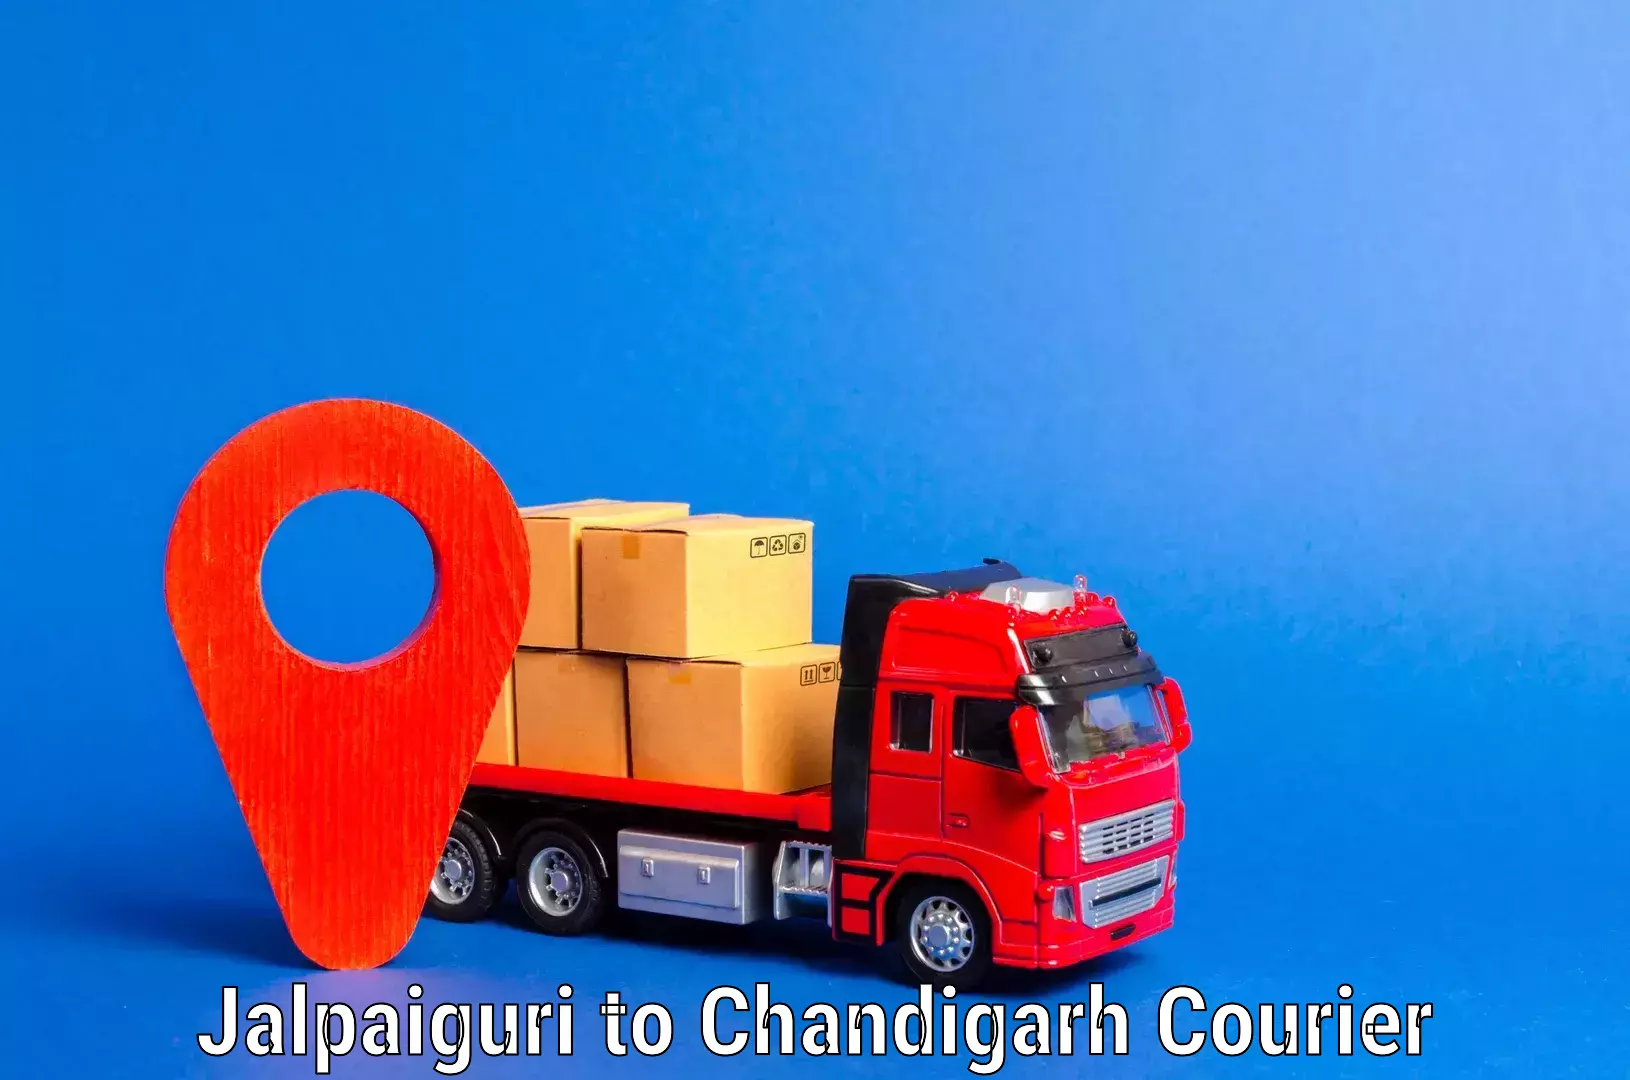 Professional moving assistance Jalpaiguri to Chandigarh